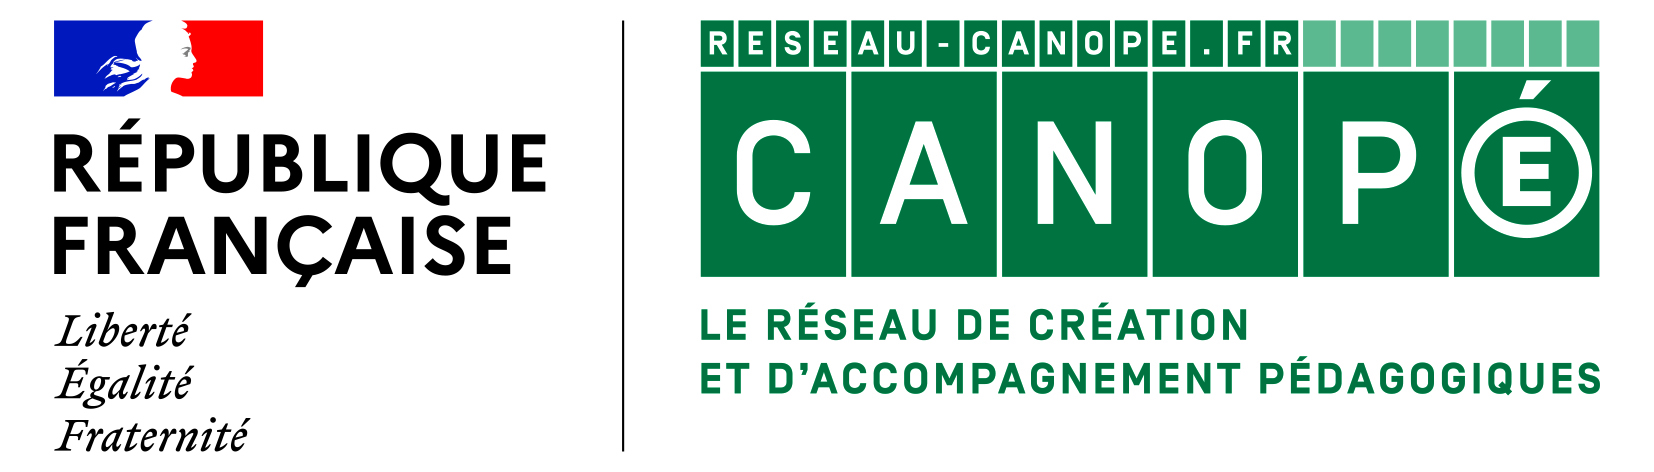 Logo canopé